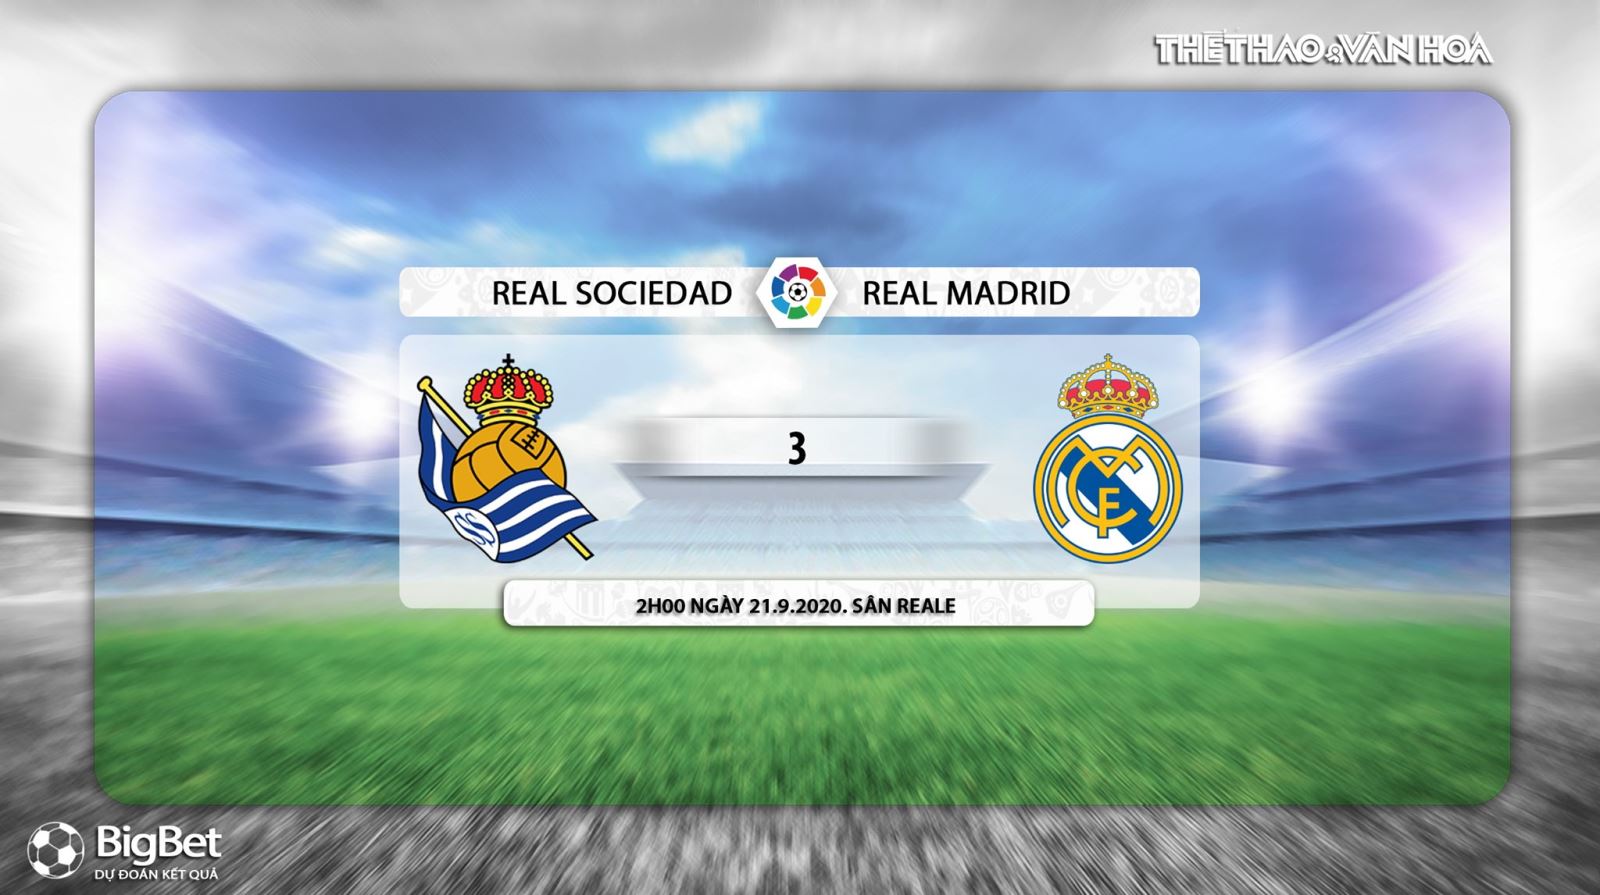 Real Sociedad vs Real Madrid, Real Sociedad, Real Madrid, nhận định bóng đá, kèo bóng đá, nhận định Real Sociedad vs Real Madrid, nhận định bóng đá bóng đá